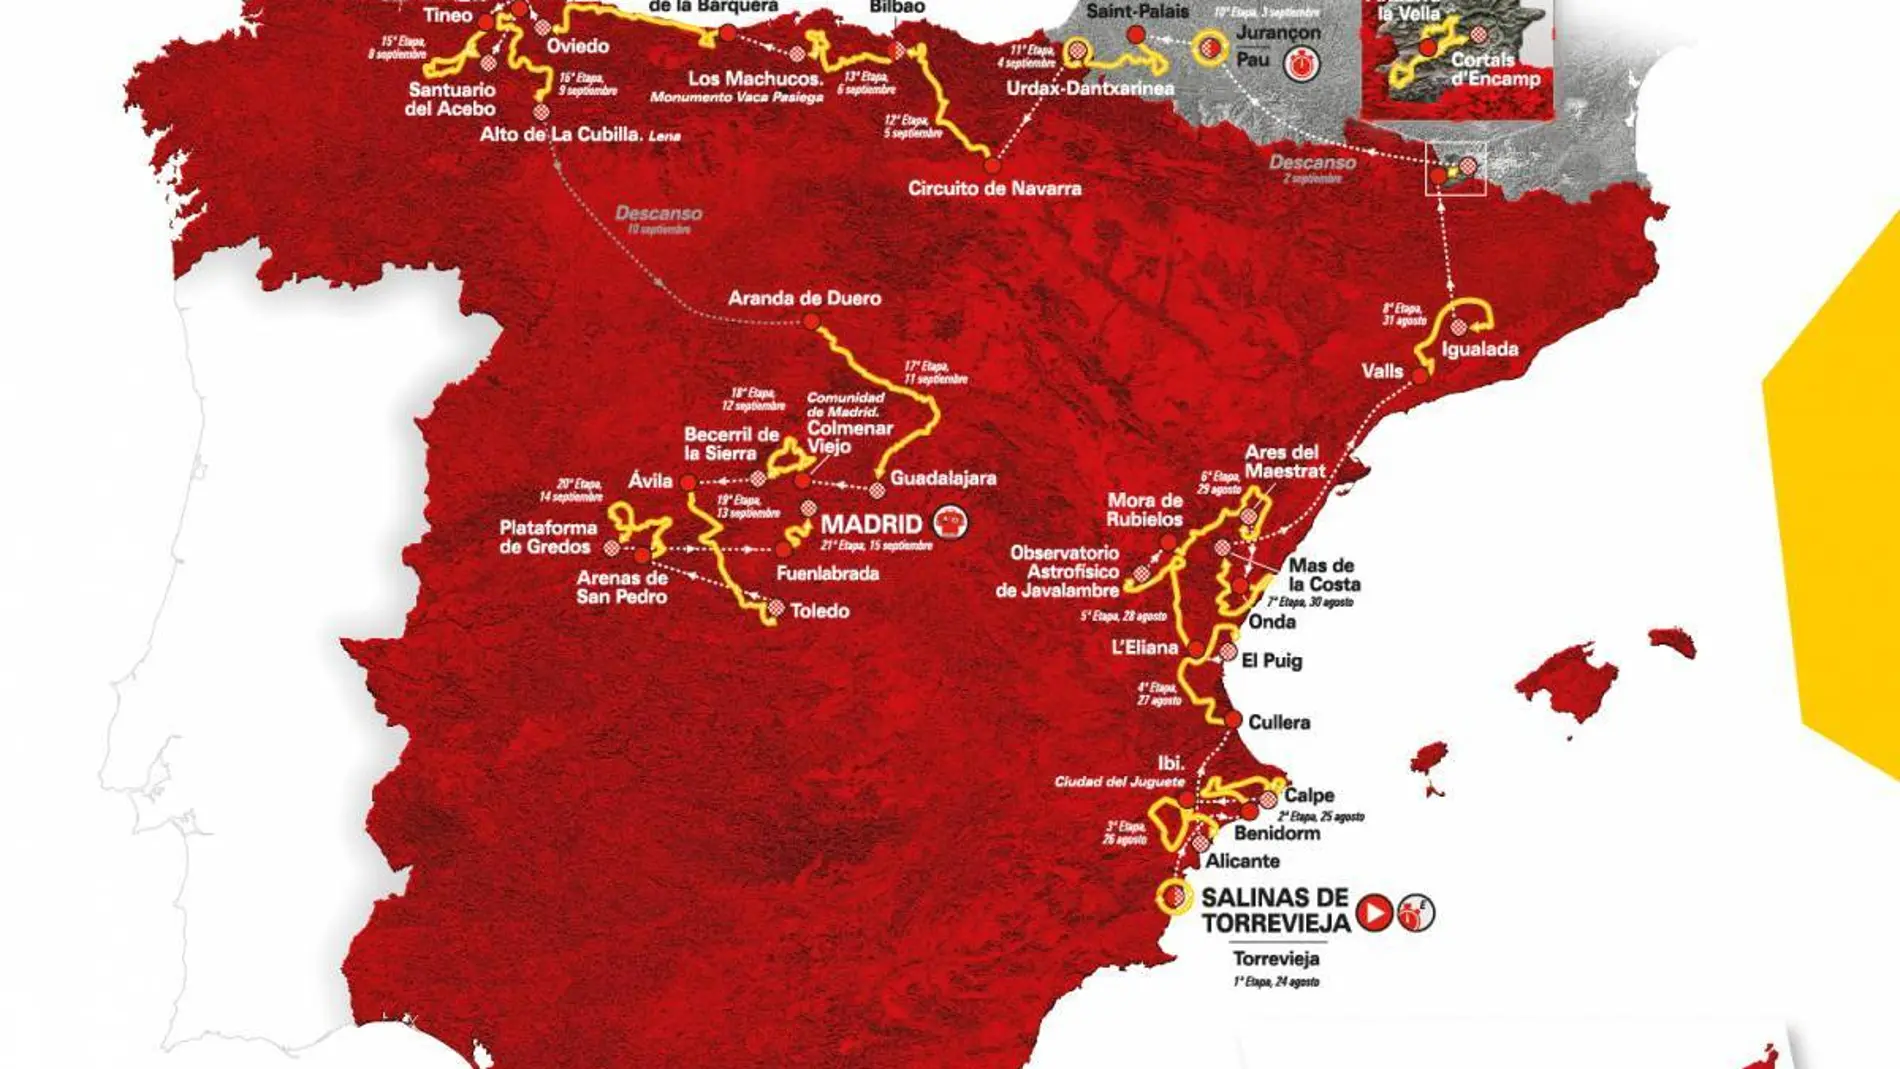 El recorrido completo de la Vuelta a España 2019